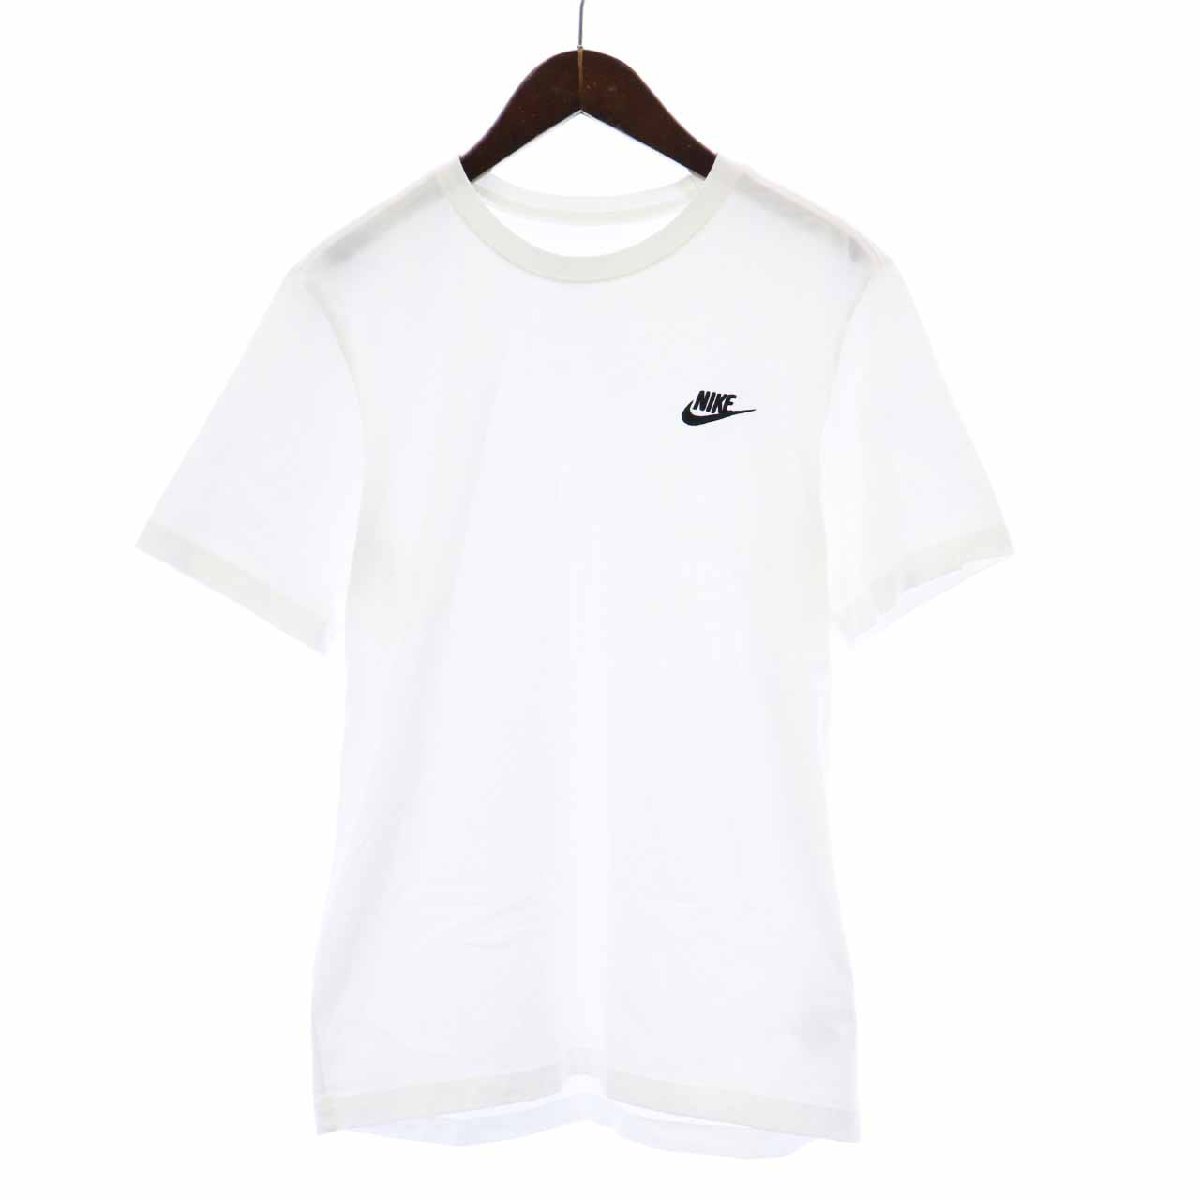 ナイキ NIKE Tシャツ カットソー クルーネック プルオーバー 半袖 刺繍 ロゴ M 白 ホワイト AR4999-101 /SY26 メンズ_画像1